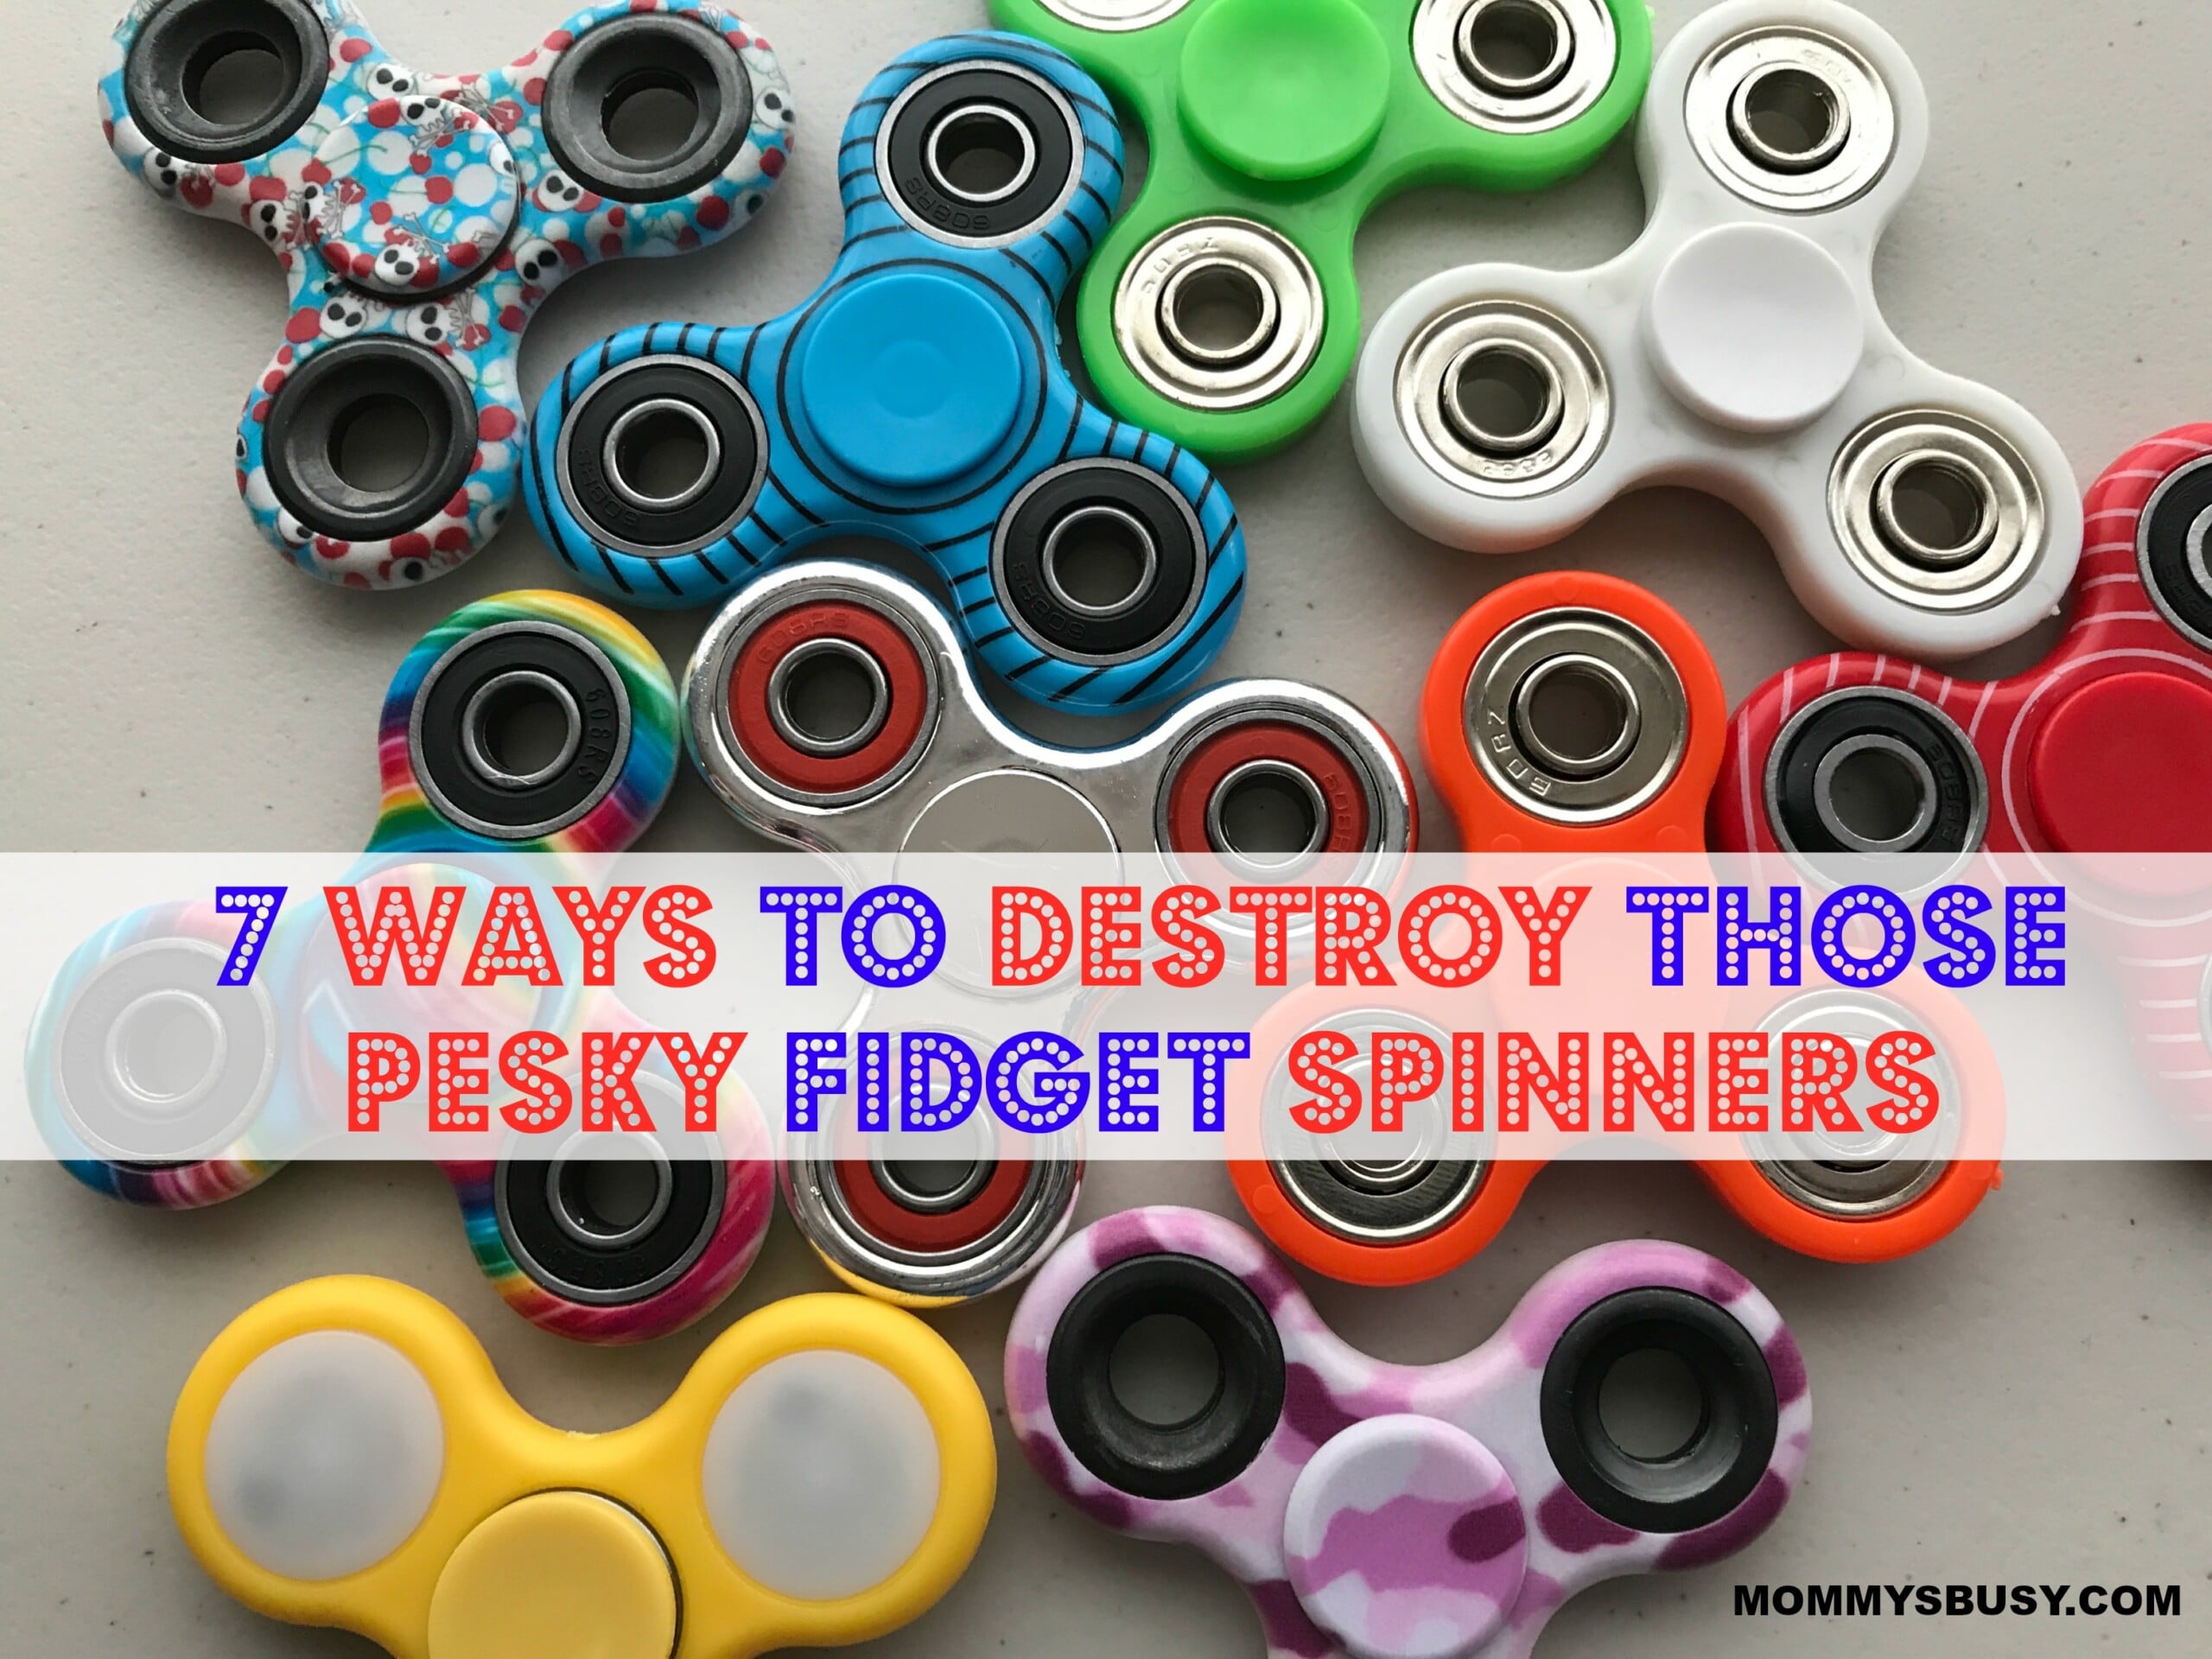 Fidget Spinners